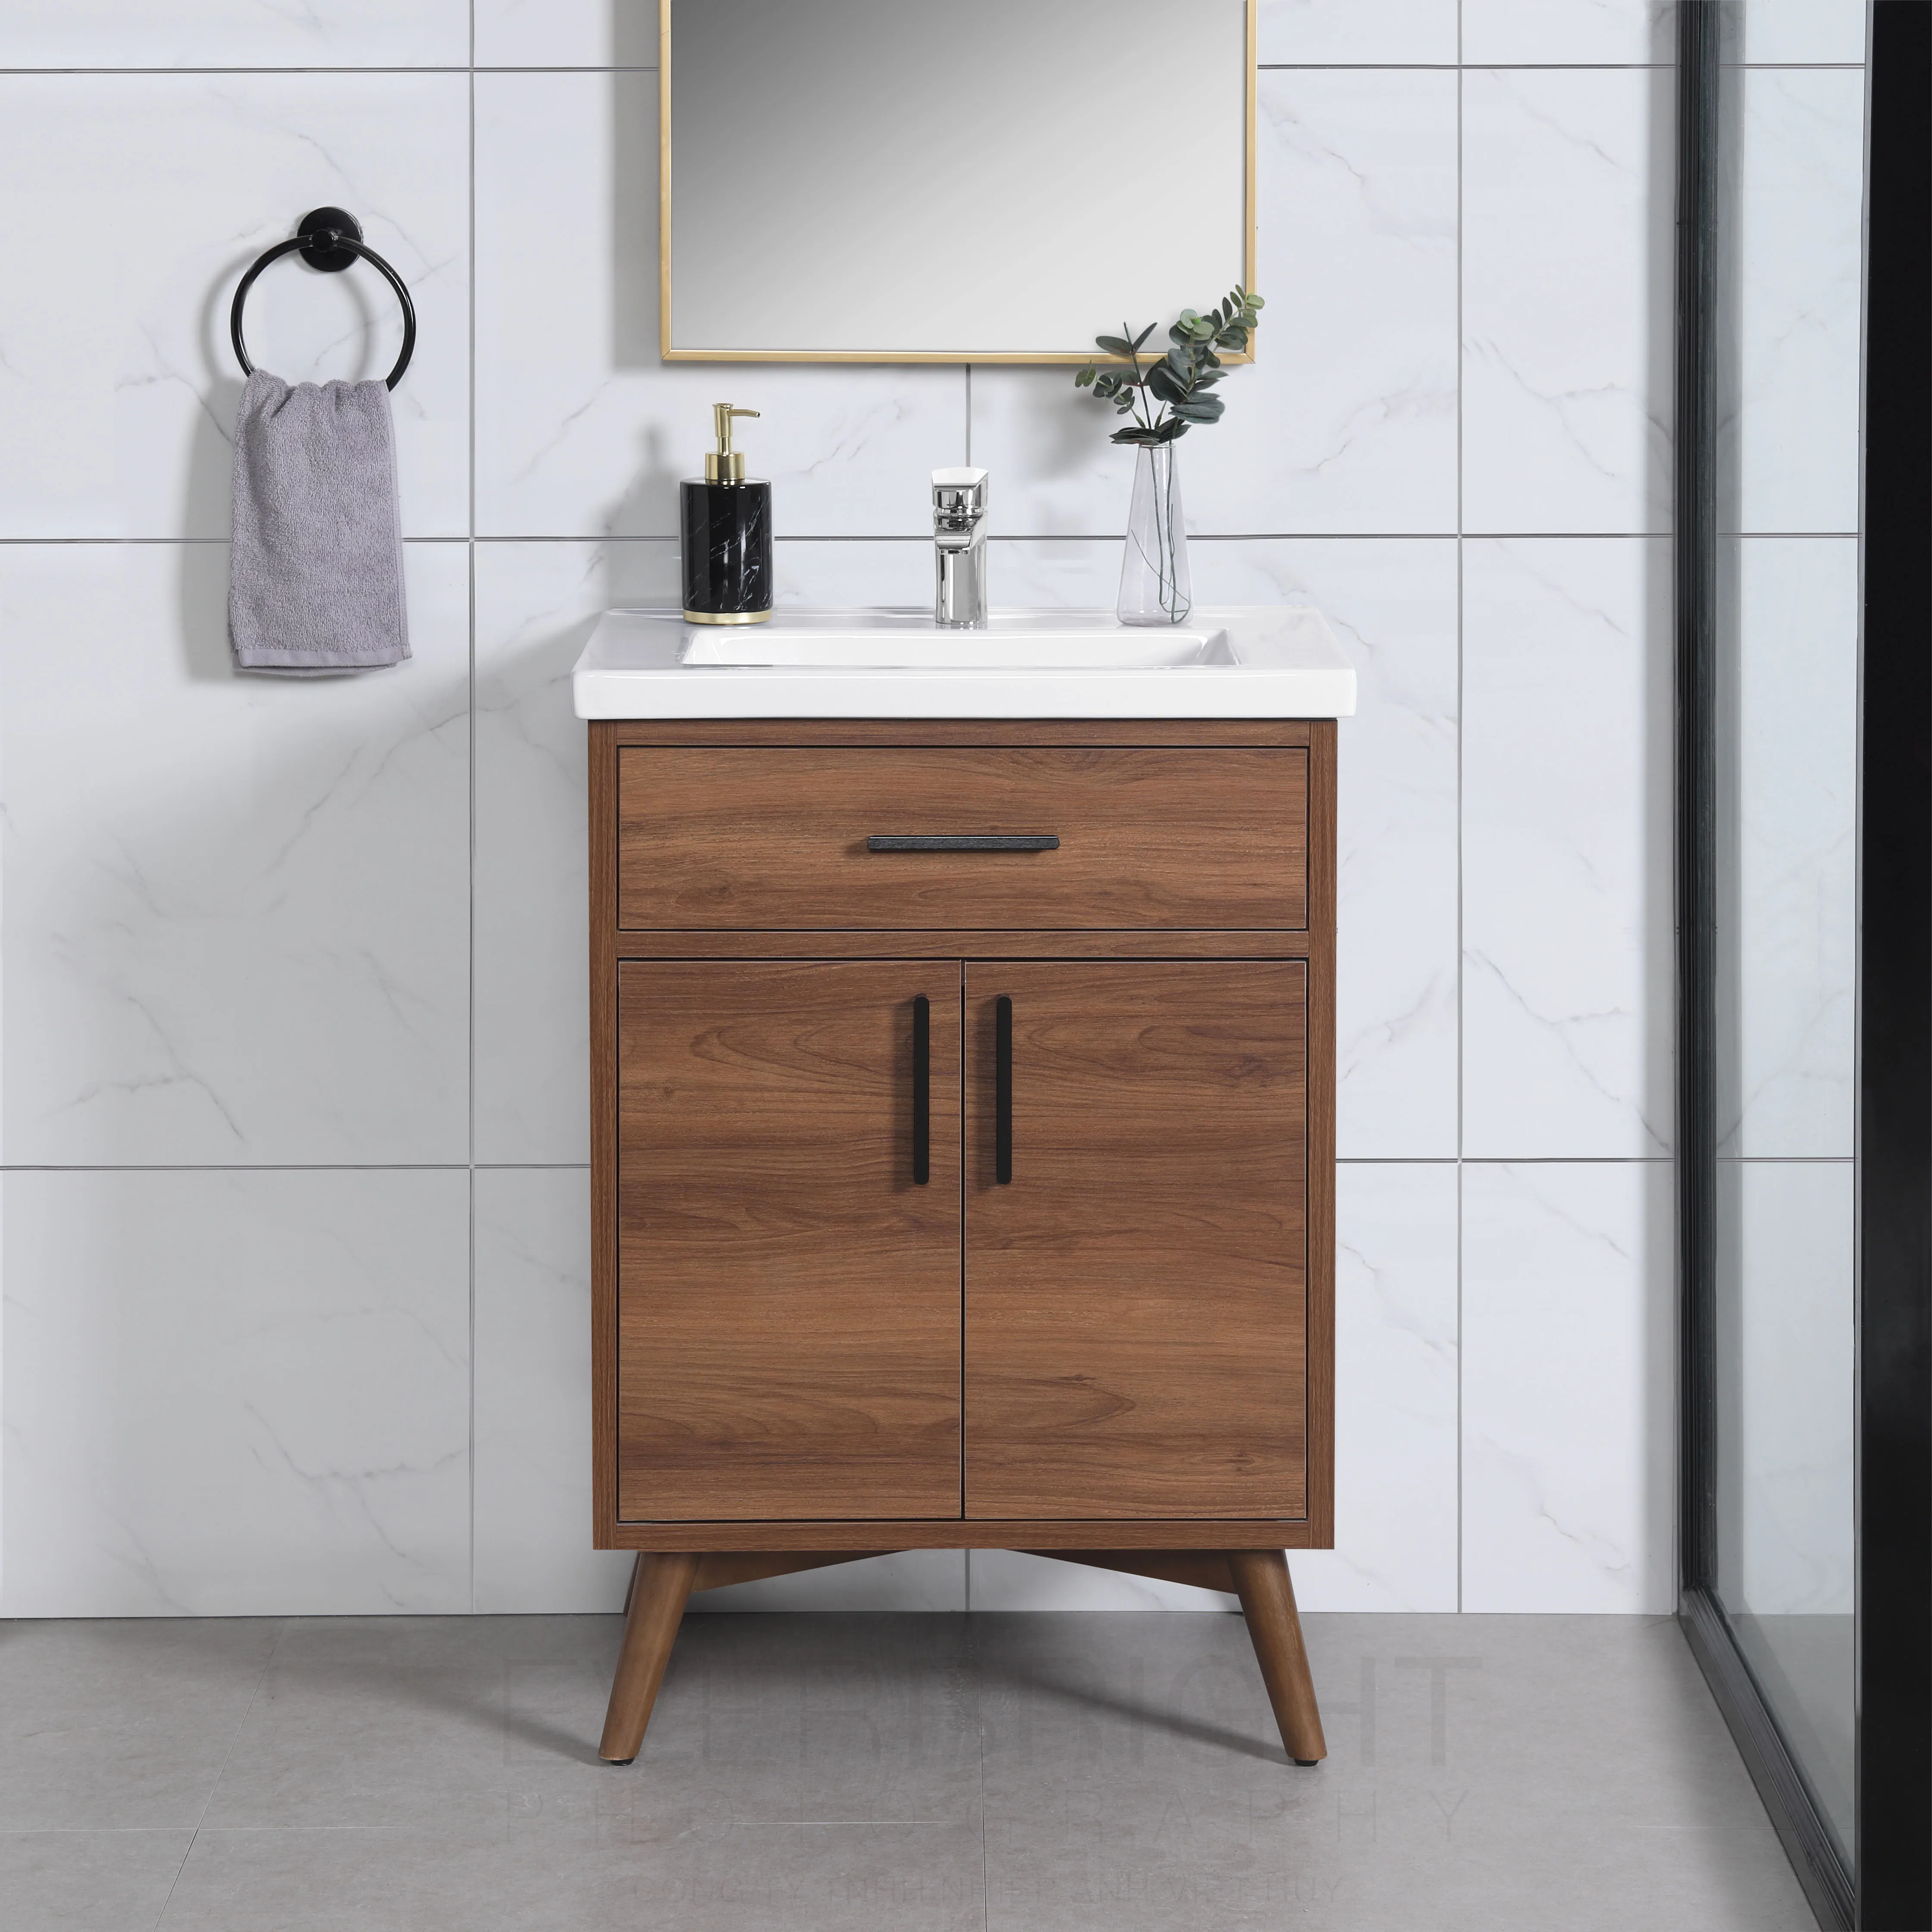 Luxury Bathroom Vanities With Cabinet For Home/hotel Modern Vanity Sink ...